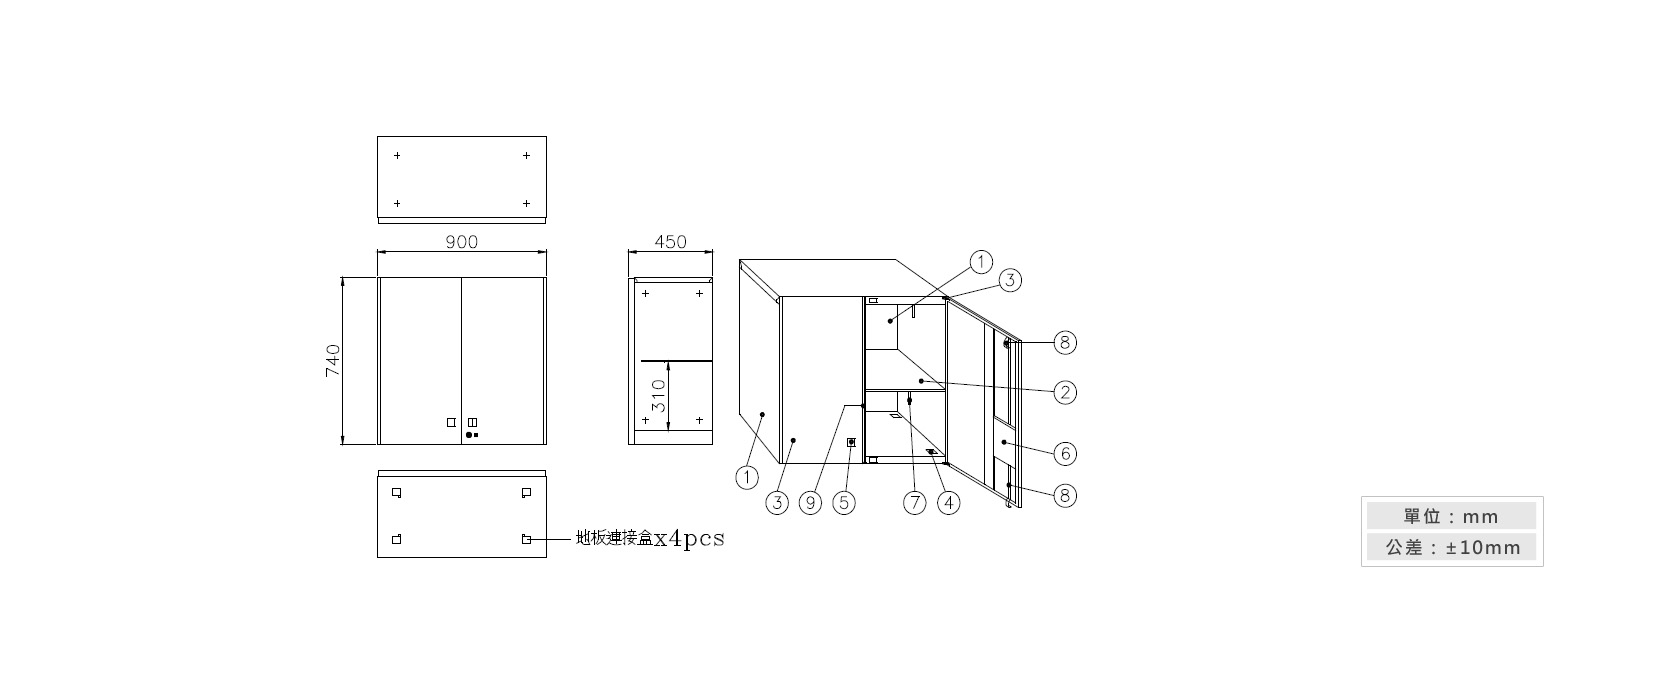 3-7雙開門上置式鋼製公文櫃材質說明